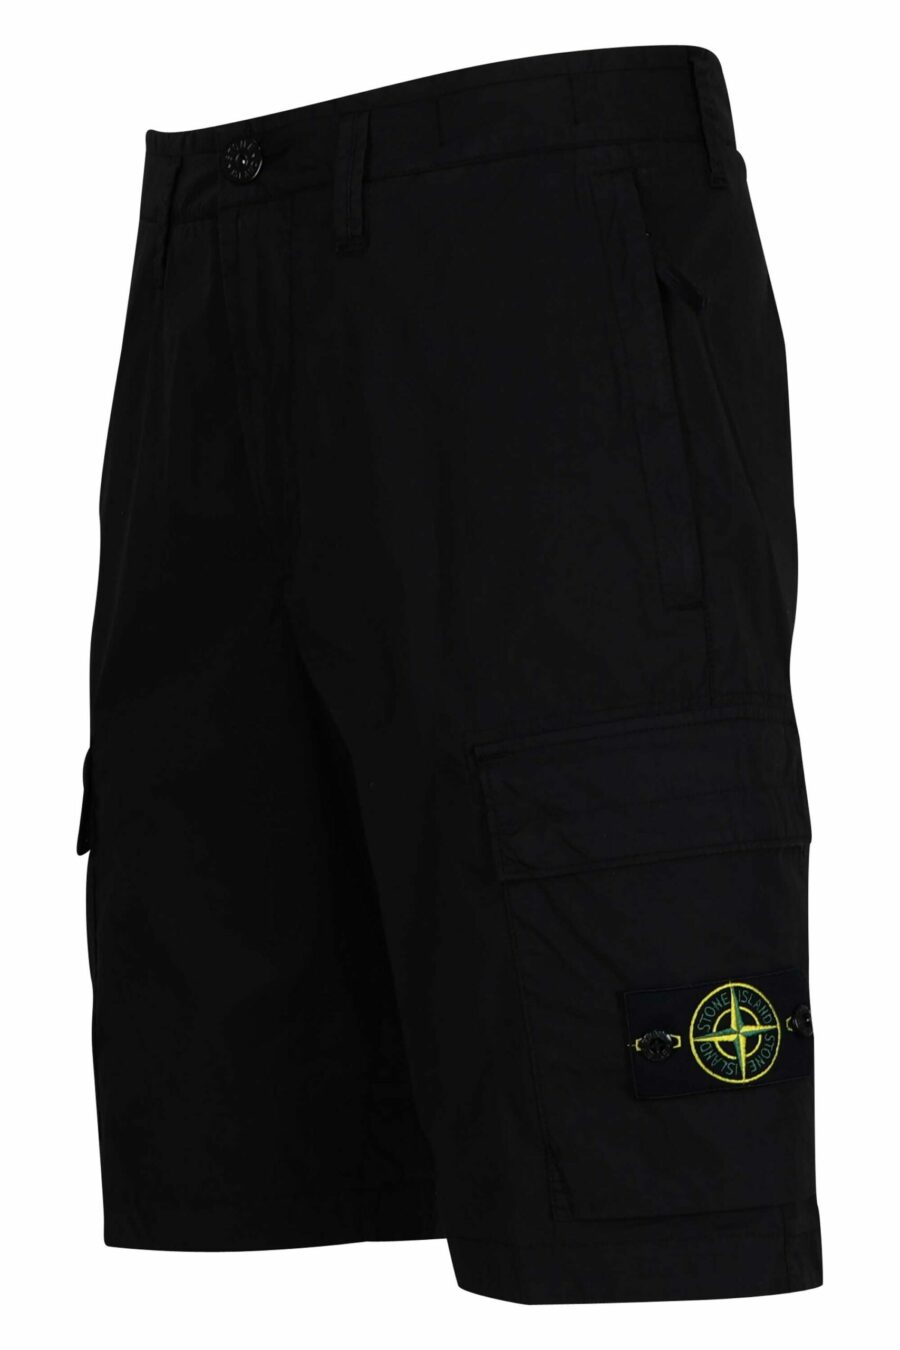 Pantalón corto negro estilo cargo con logo parche brújula - 8052572851193 1 scaled